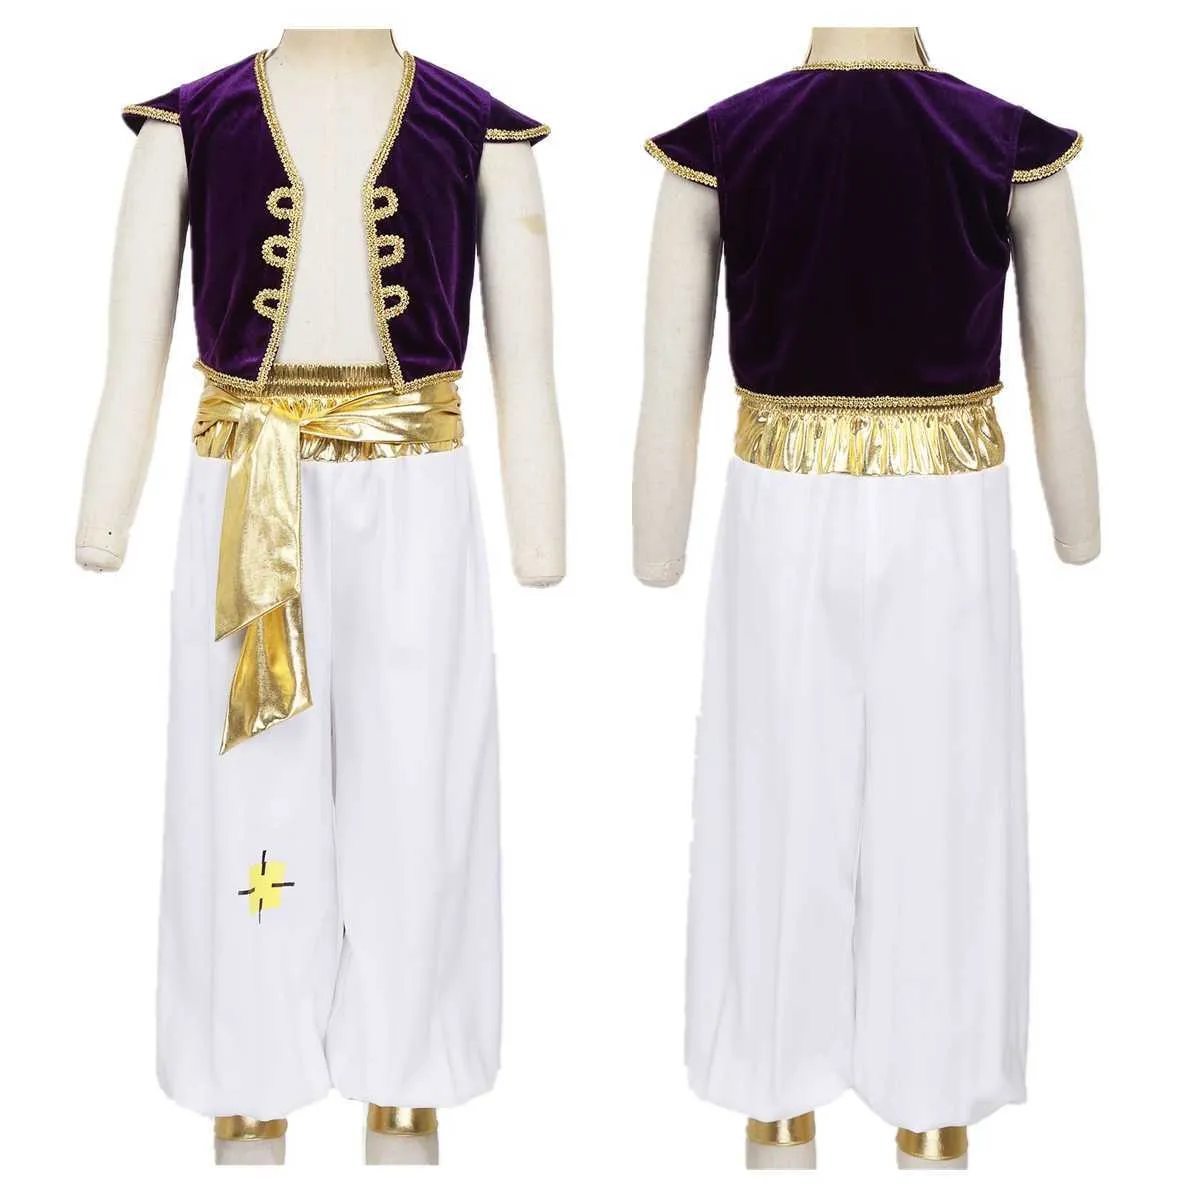 Kinder Jungen Fancy Arabian Prince Kostüme Cap Sleeves Weste mit Hosen für Halloween Cosplay Fairy Partys Dress Up Q0910